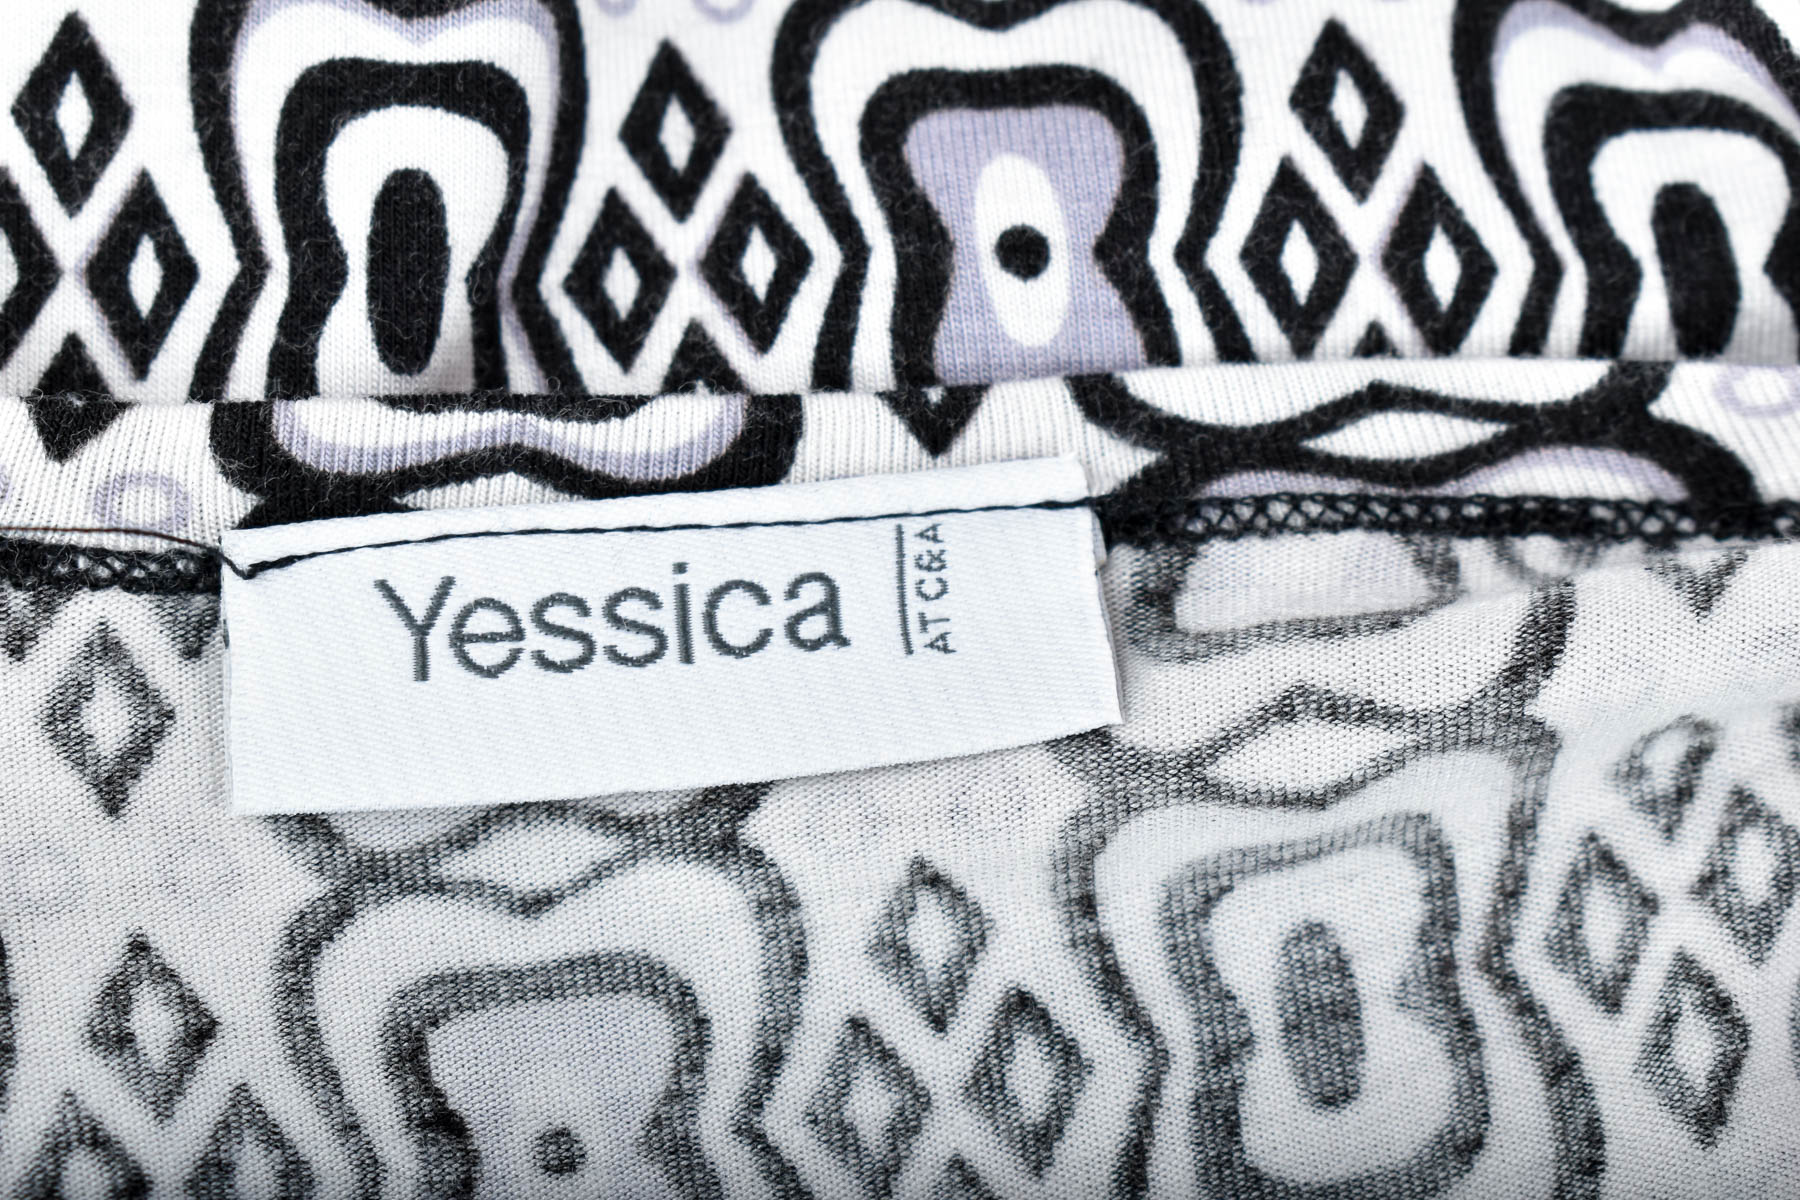 Women's t-shirt - Yessica - 2